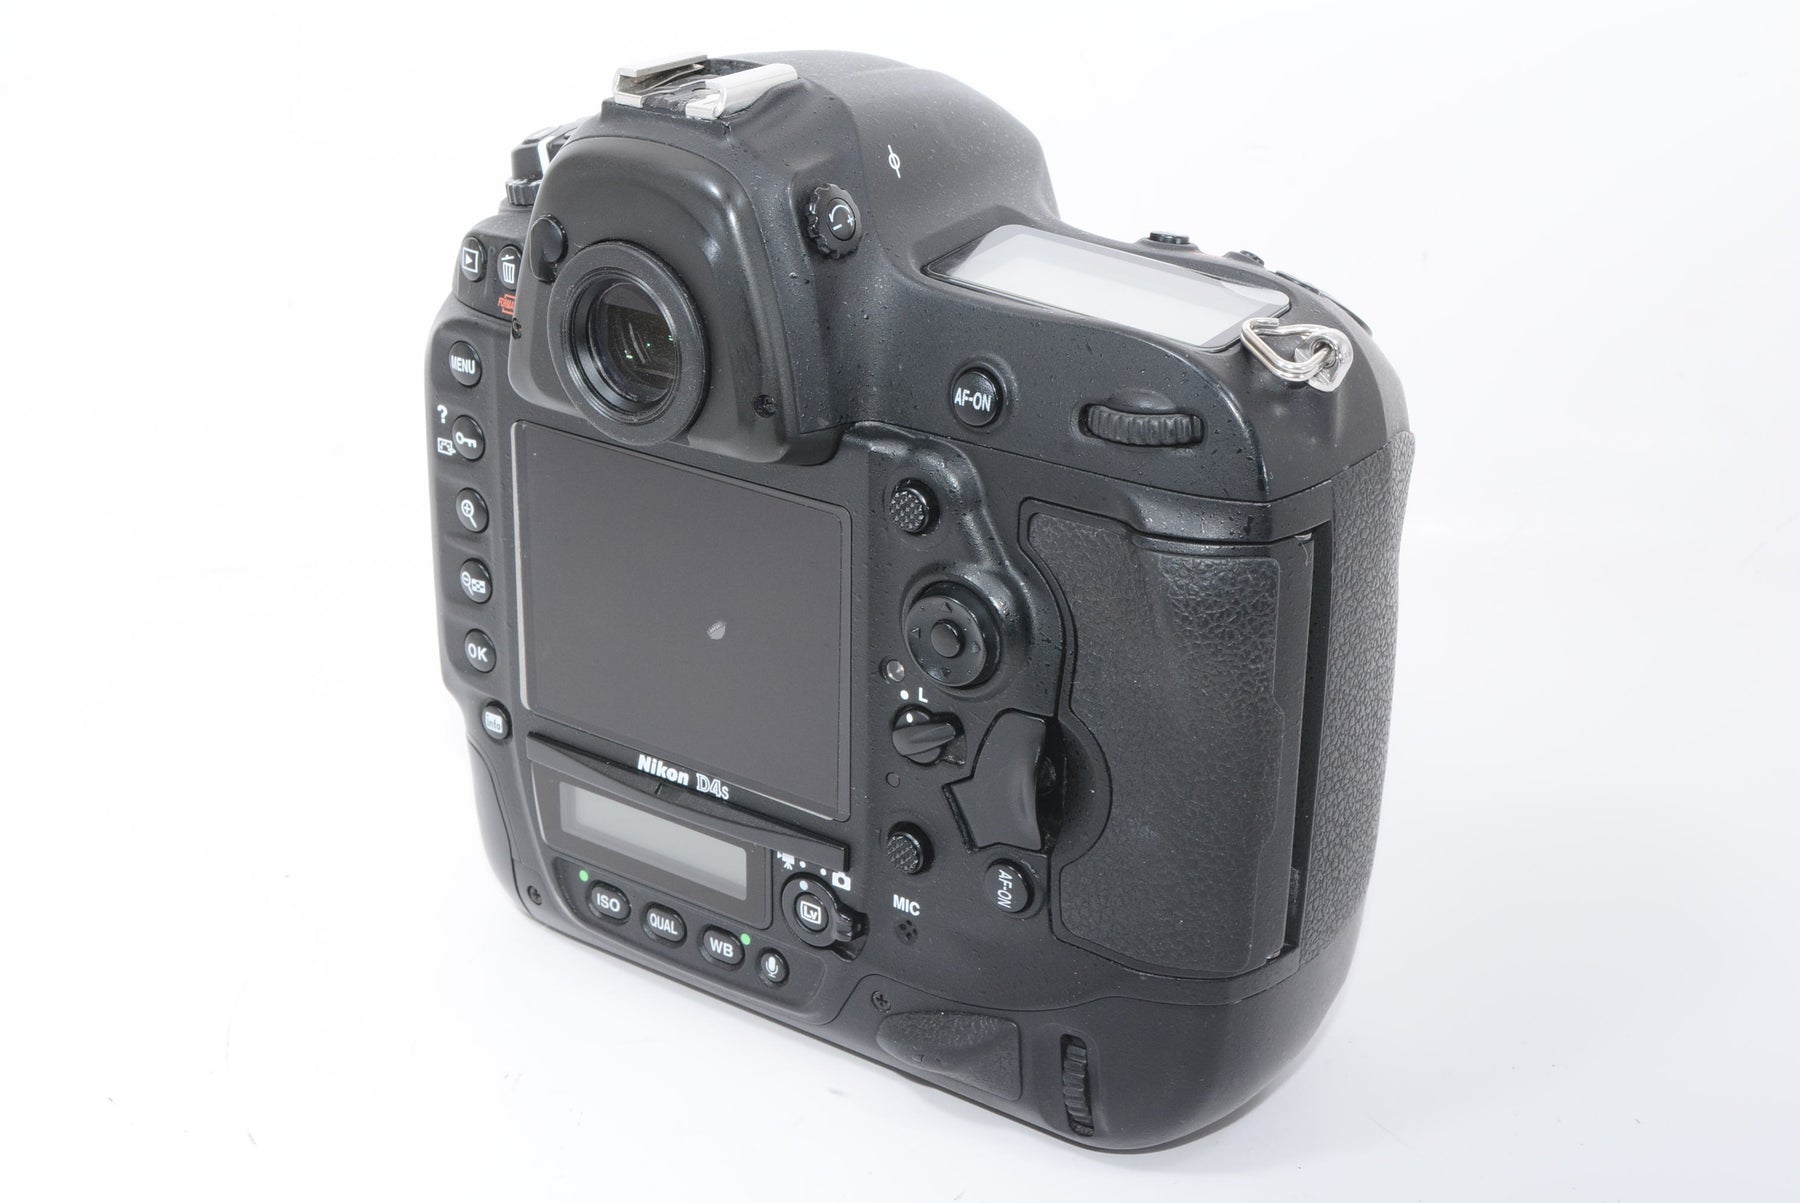 【外観特上級】Nikon デジタル一眼レフカメラ D4Sボディー